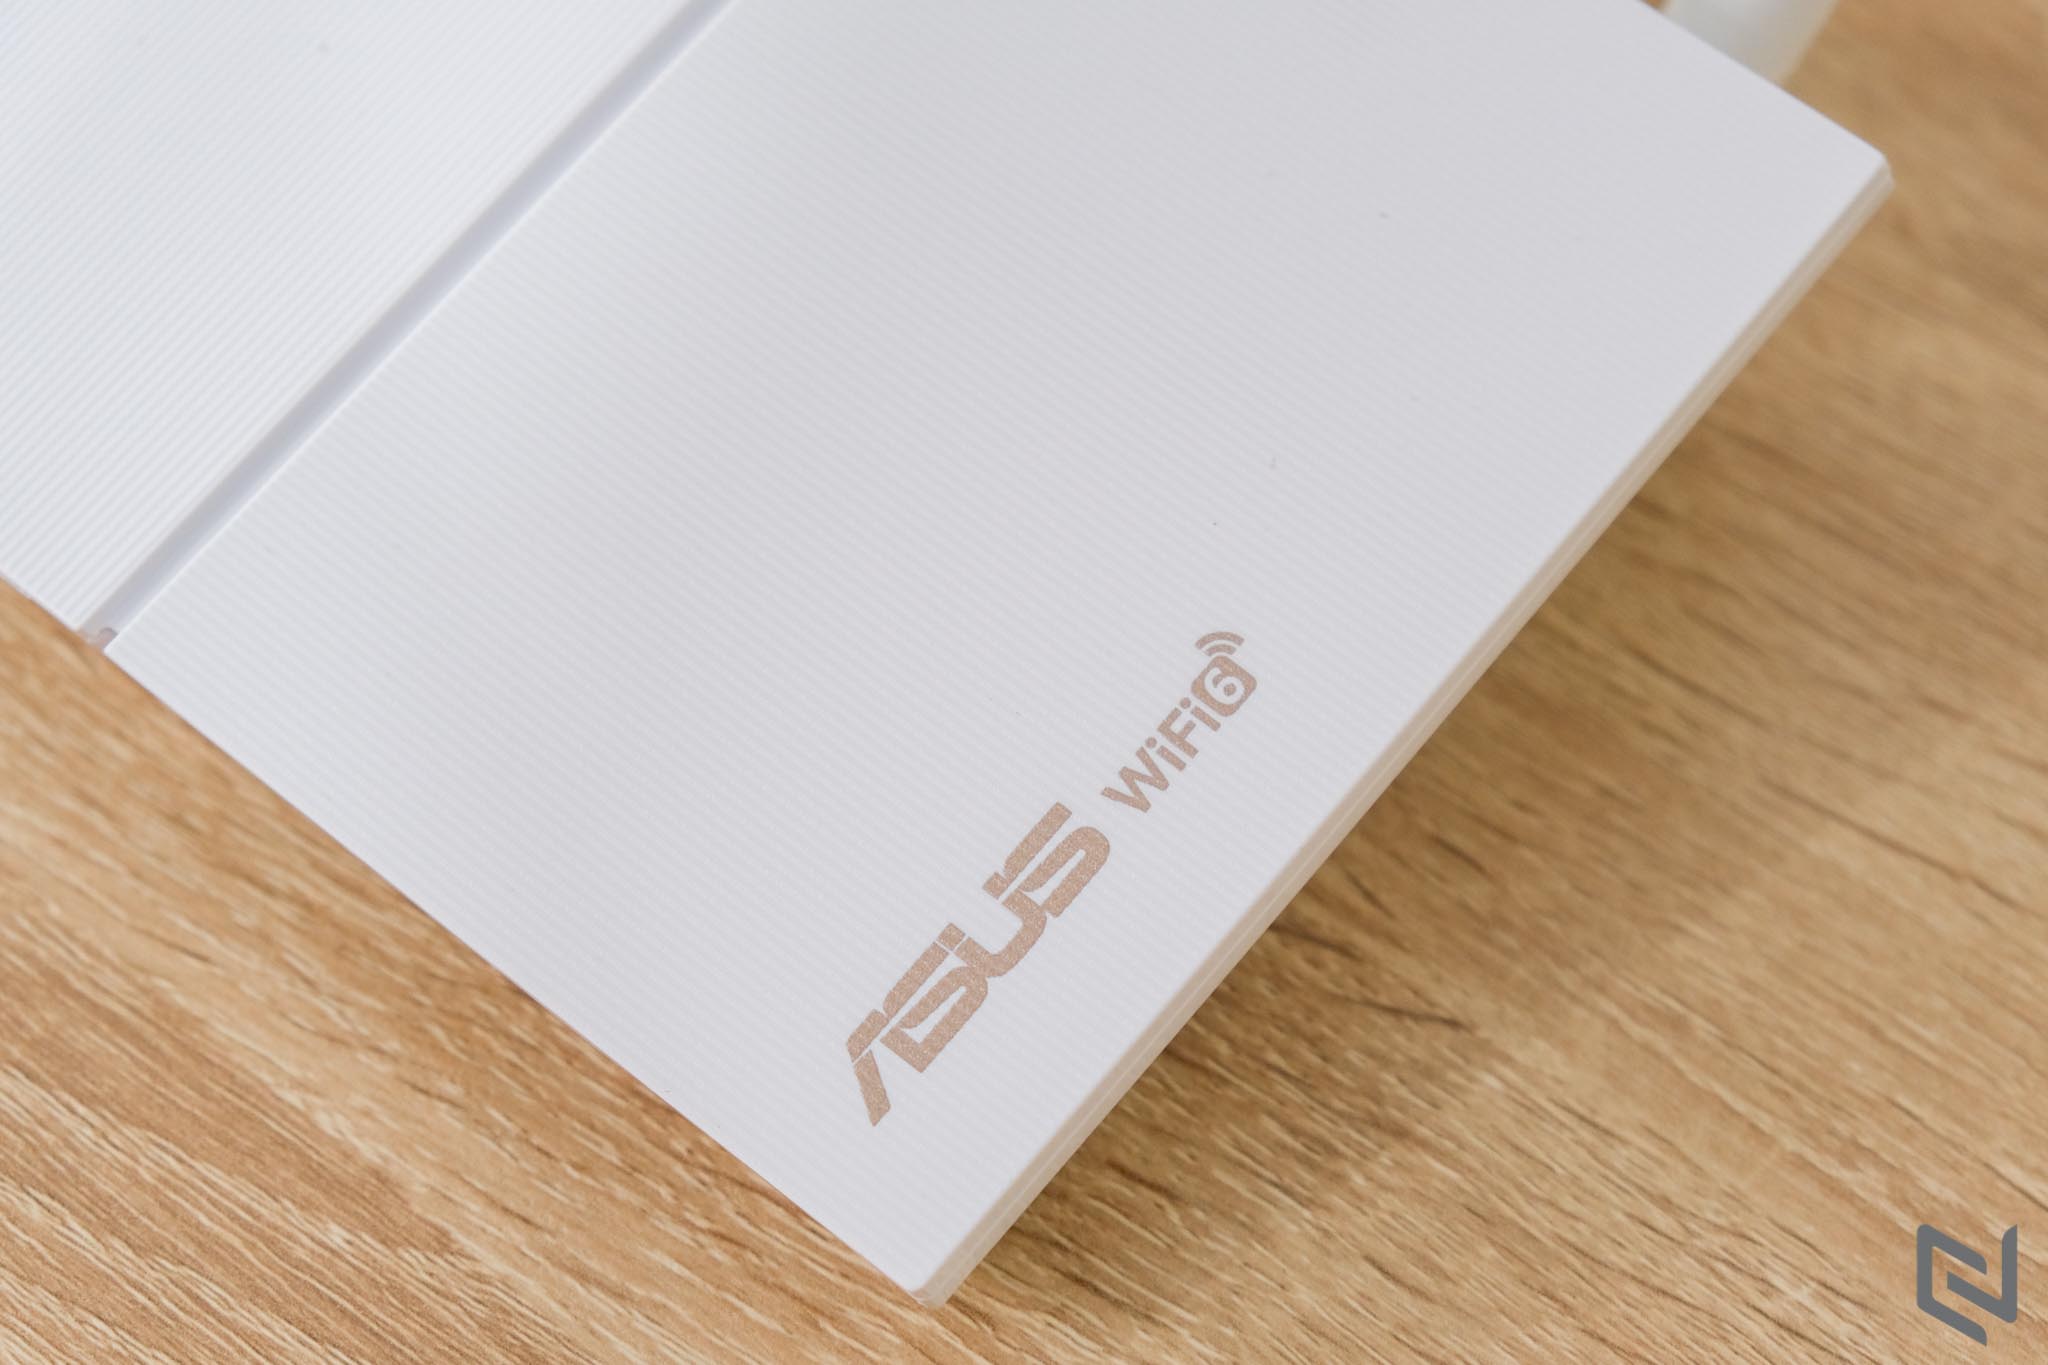 Trên tay Router Wifi ASUS RT-AX55 AX1800 Dual Band WiFi 6: Cộng sự tuyệt vời cho PlayStation 5, tối ưu tốc độ và tính thẩm mỹ với chi phí phải chăng